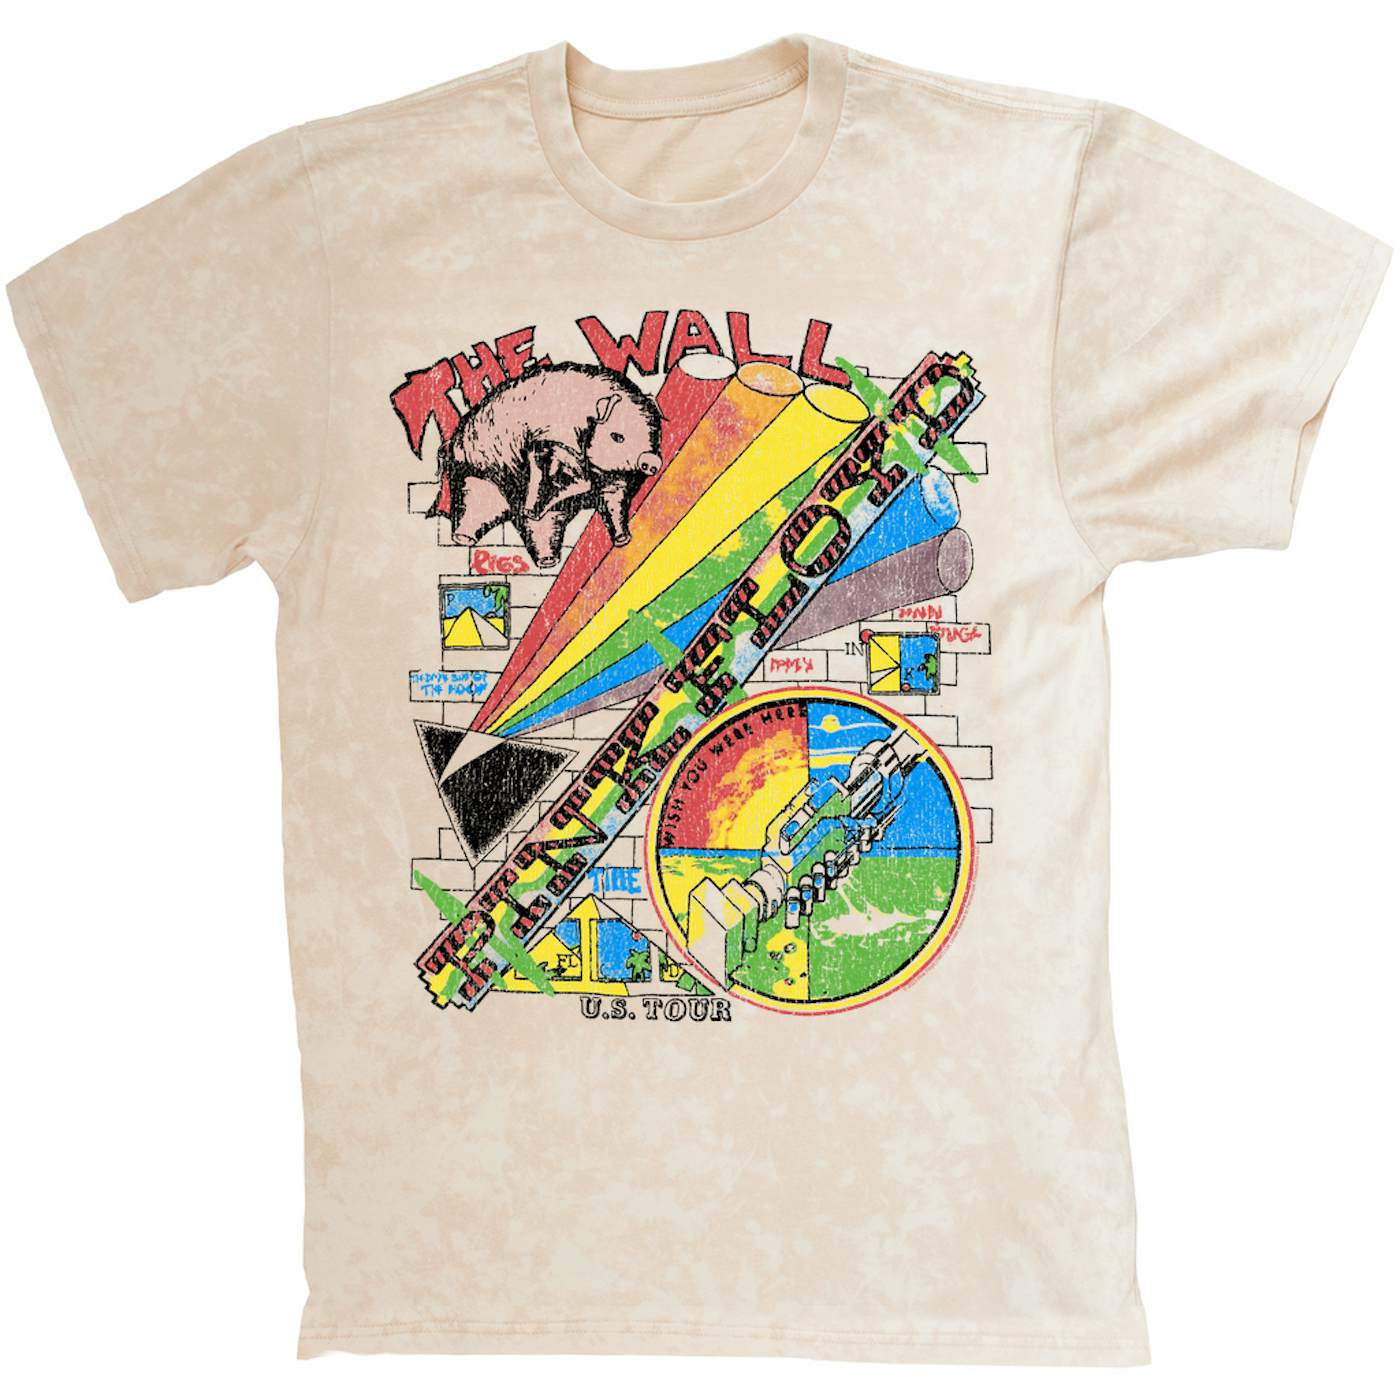 Official Pink Floyd Merchandise T-shirt